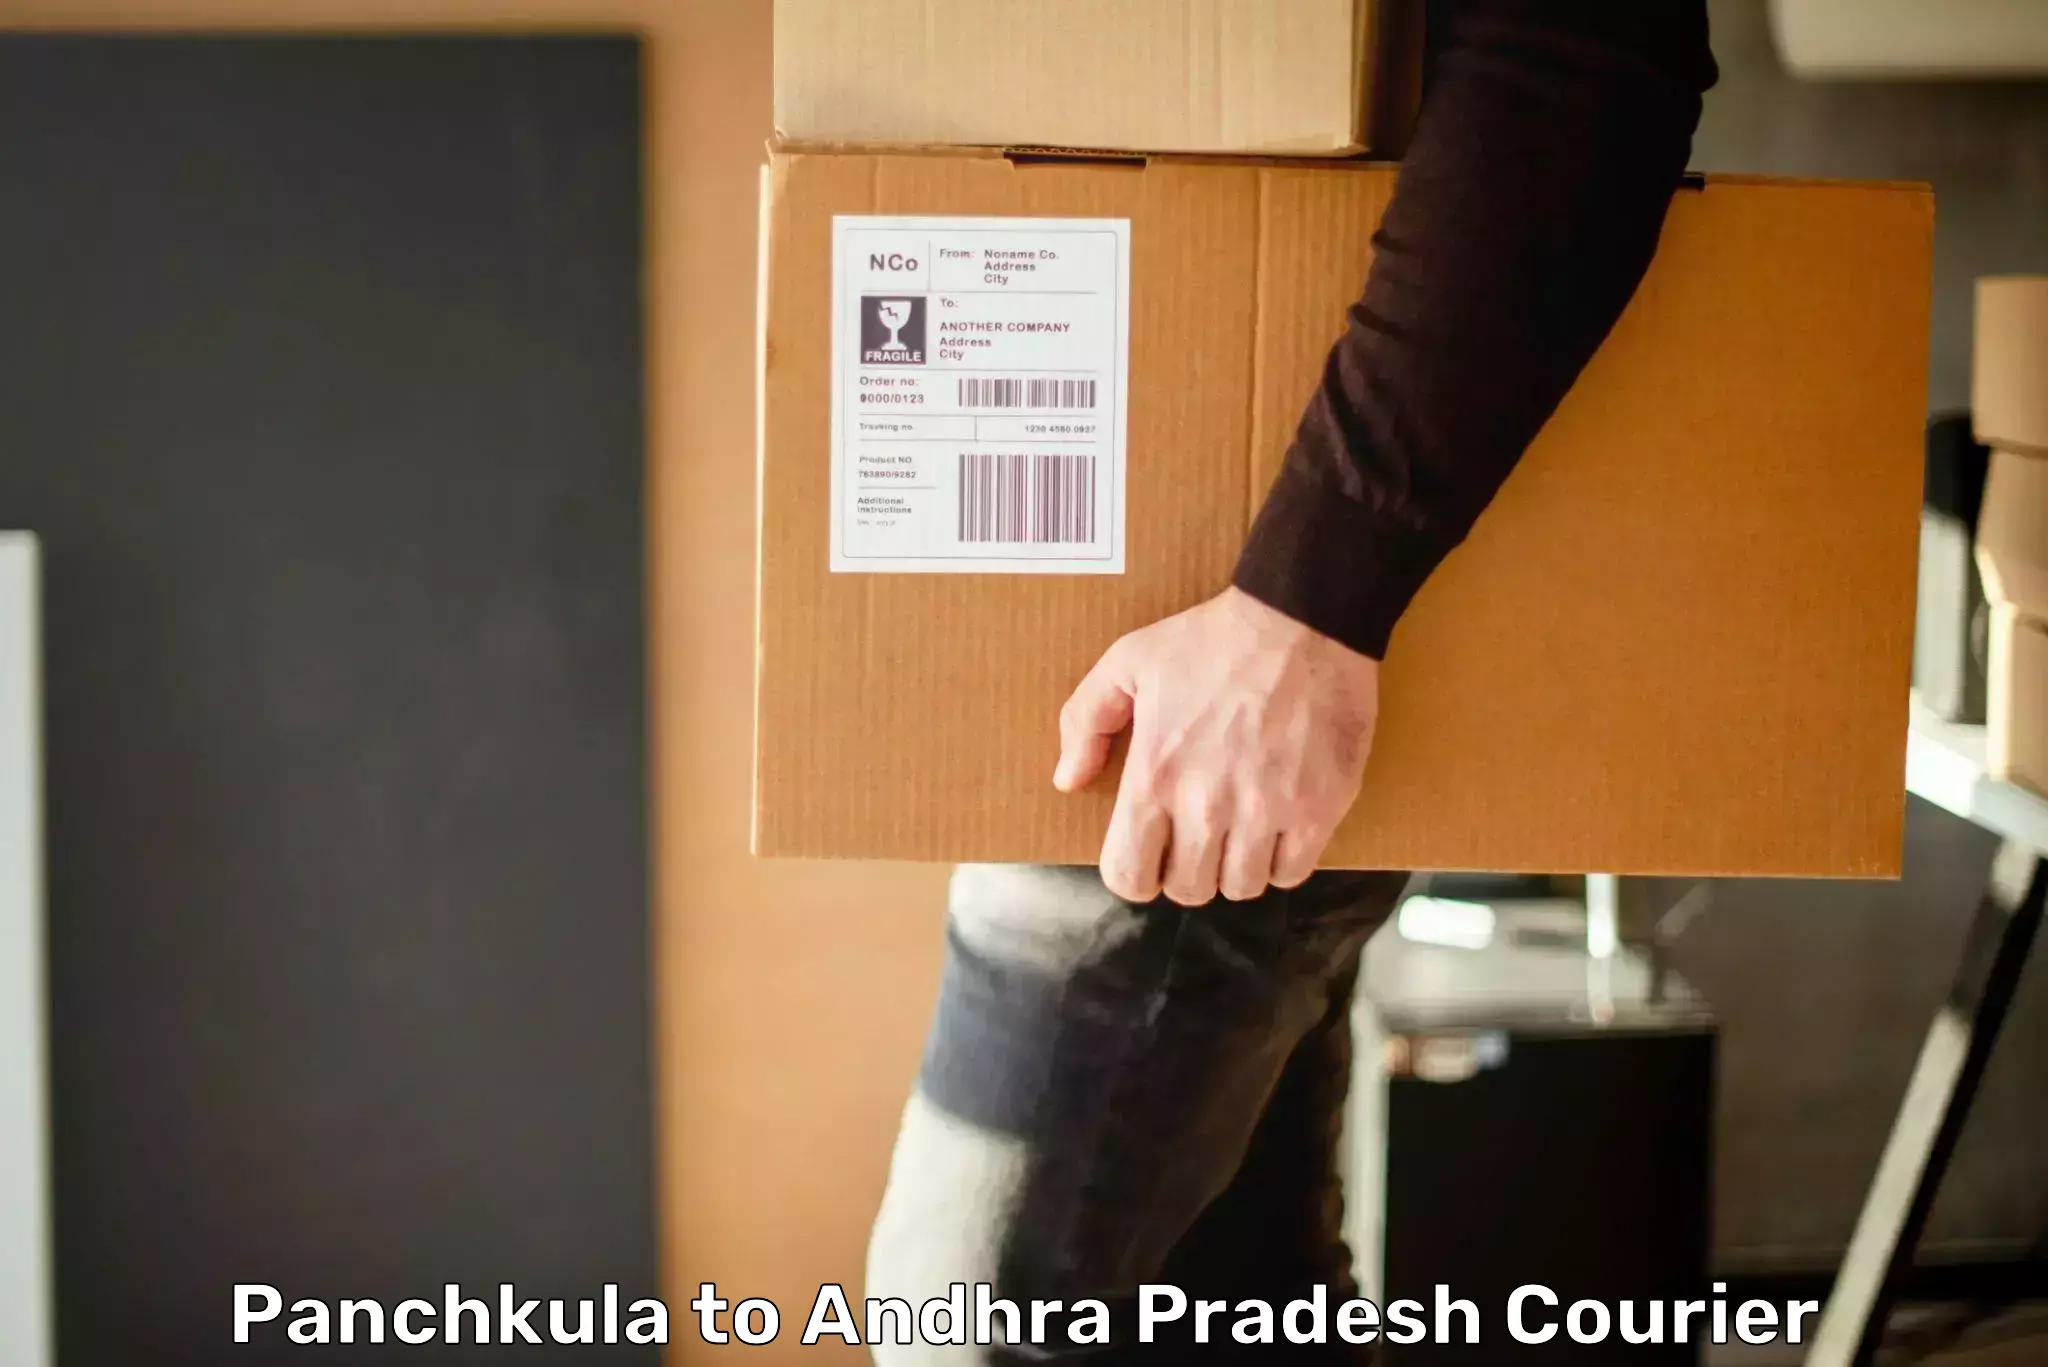 Cargo delivery service Panchkula to Koduru